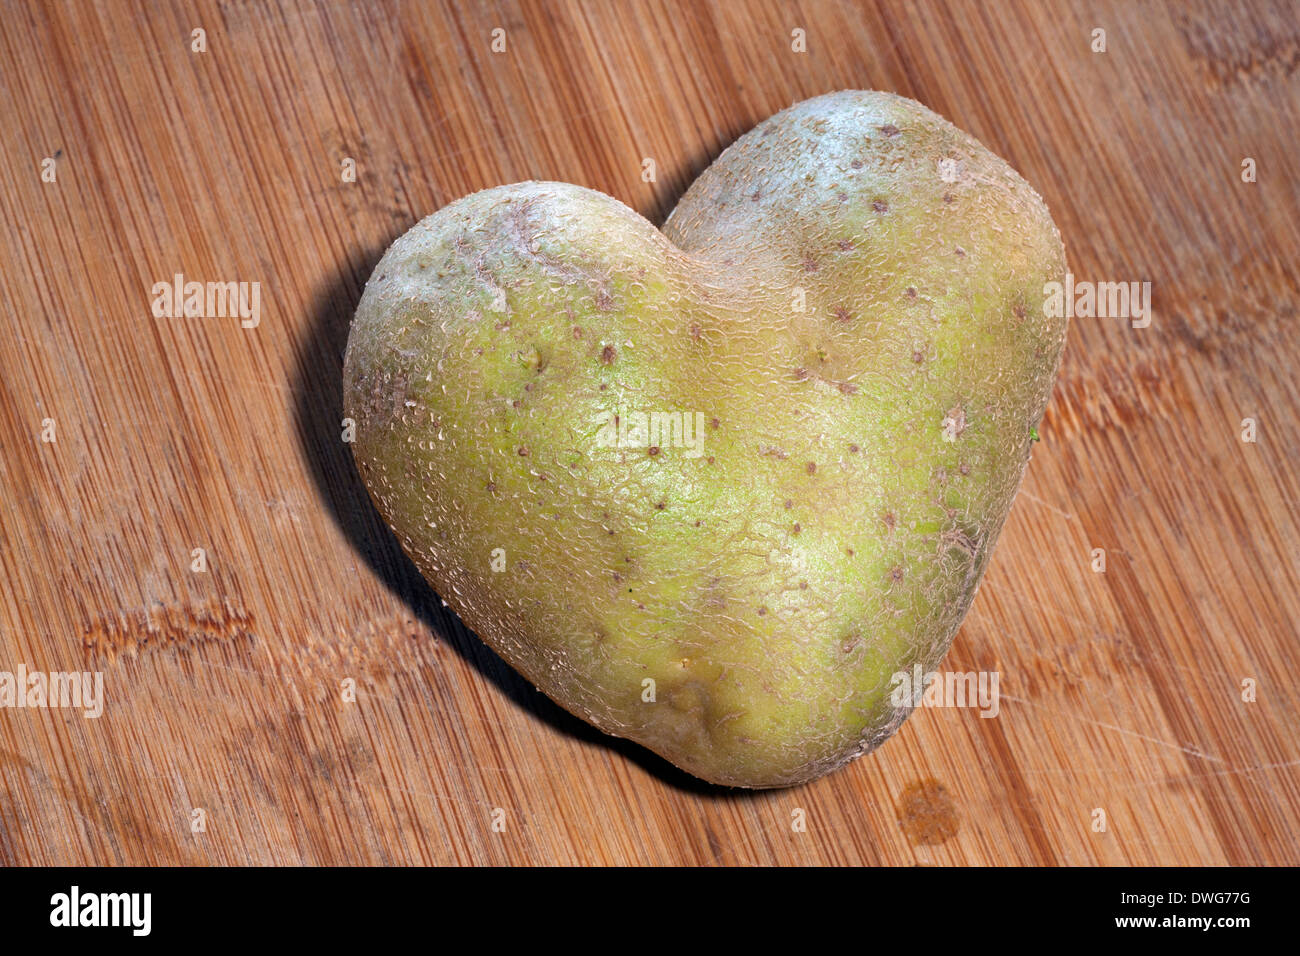 Heart-shaped potato on table Stock Photo